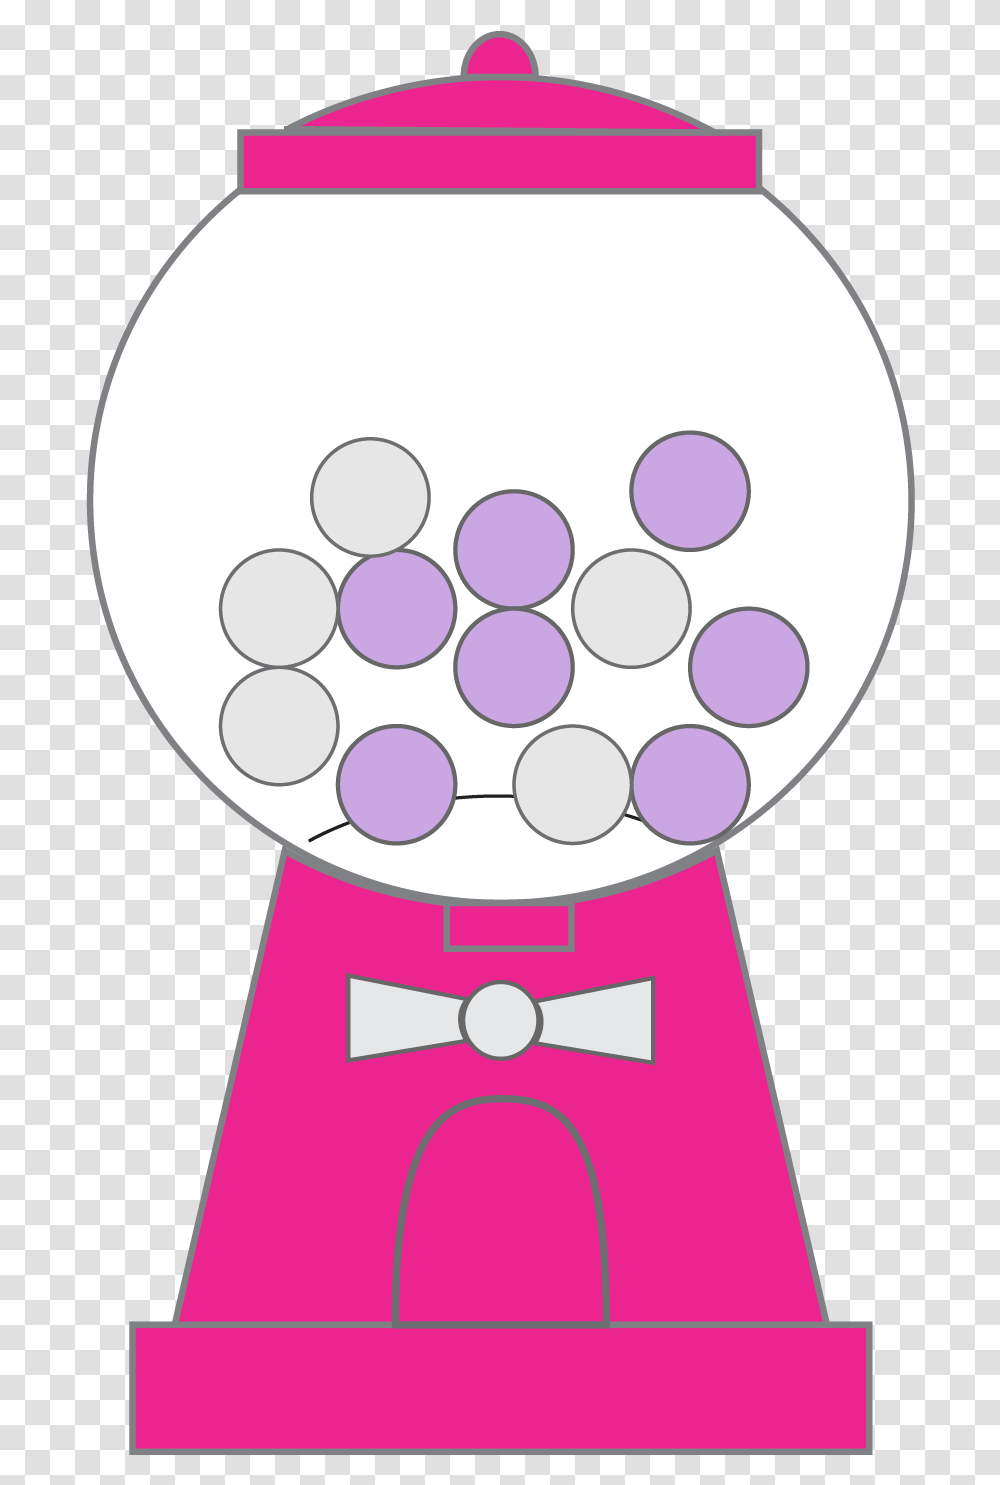 Bubble Gum Machine Clipart Pink Bubble Gum Machine Clip Art, Sphere, Tie, Accessories, Photography Transparent Png